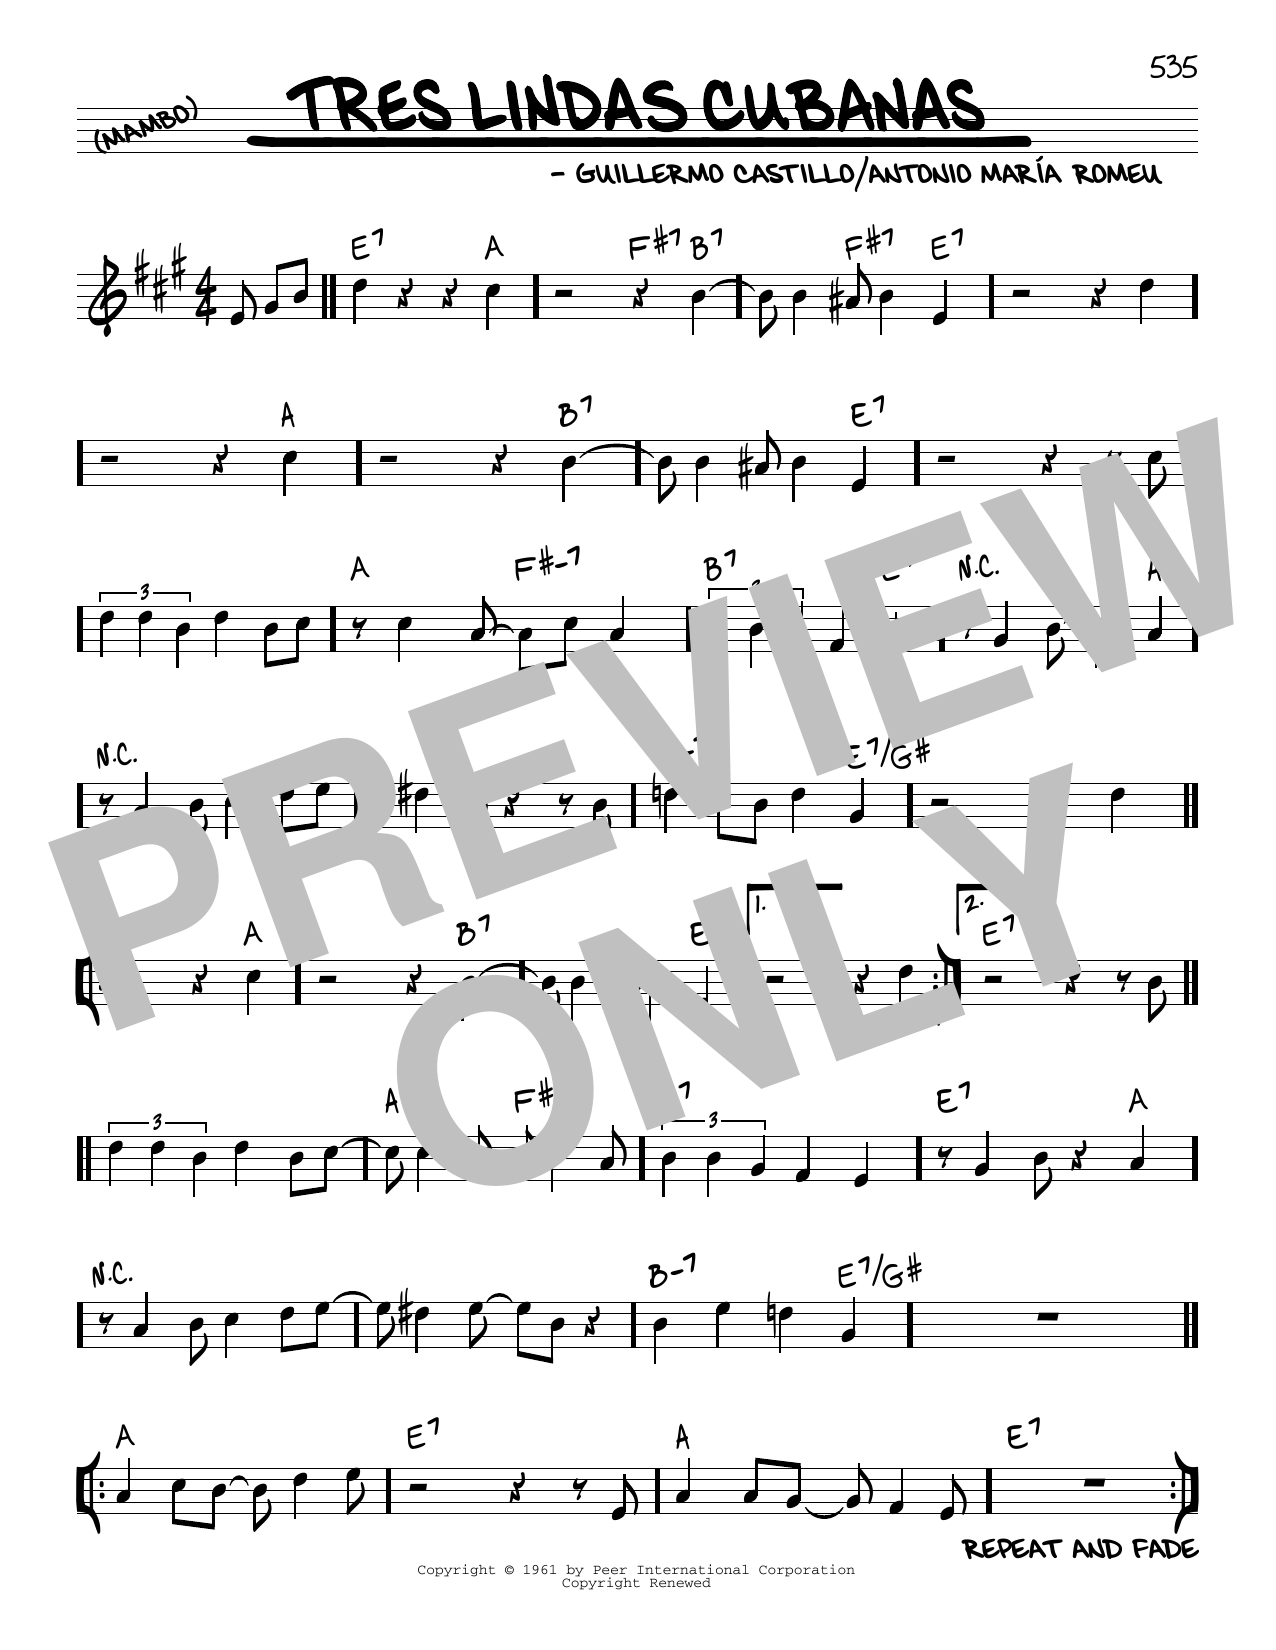 Antonio Maria Romeu Tres Lindas Cubanas Sheet Music Notes & Chords for Real Book – Melody & Chords - Download or Print PDF